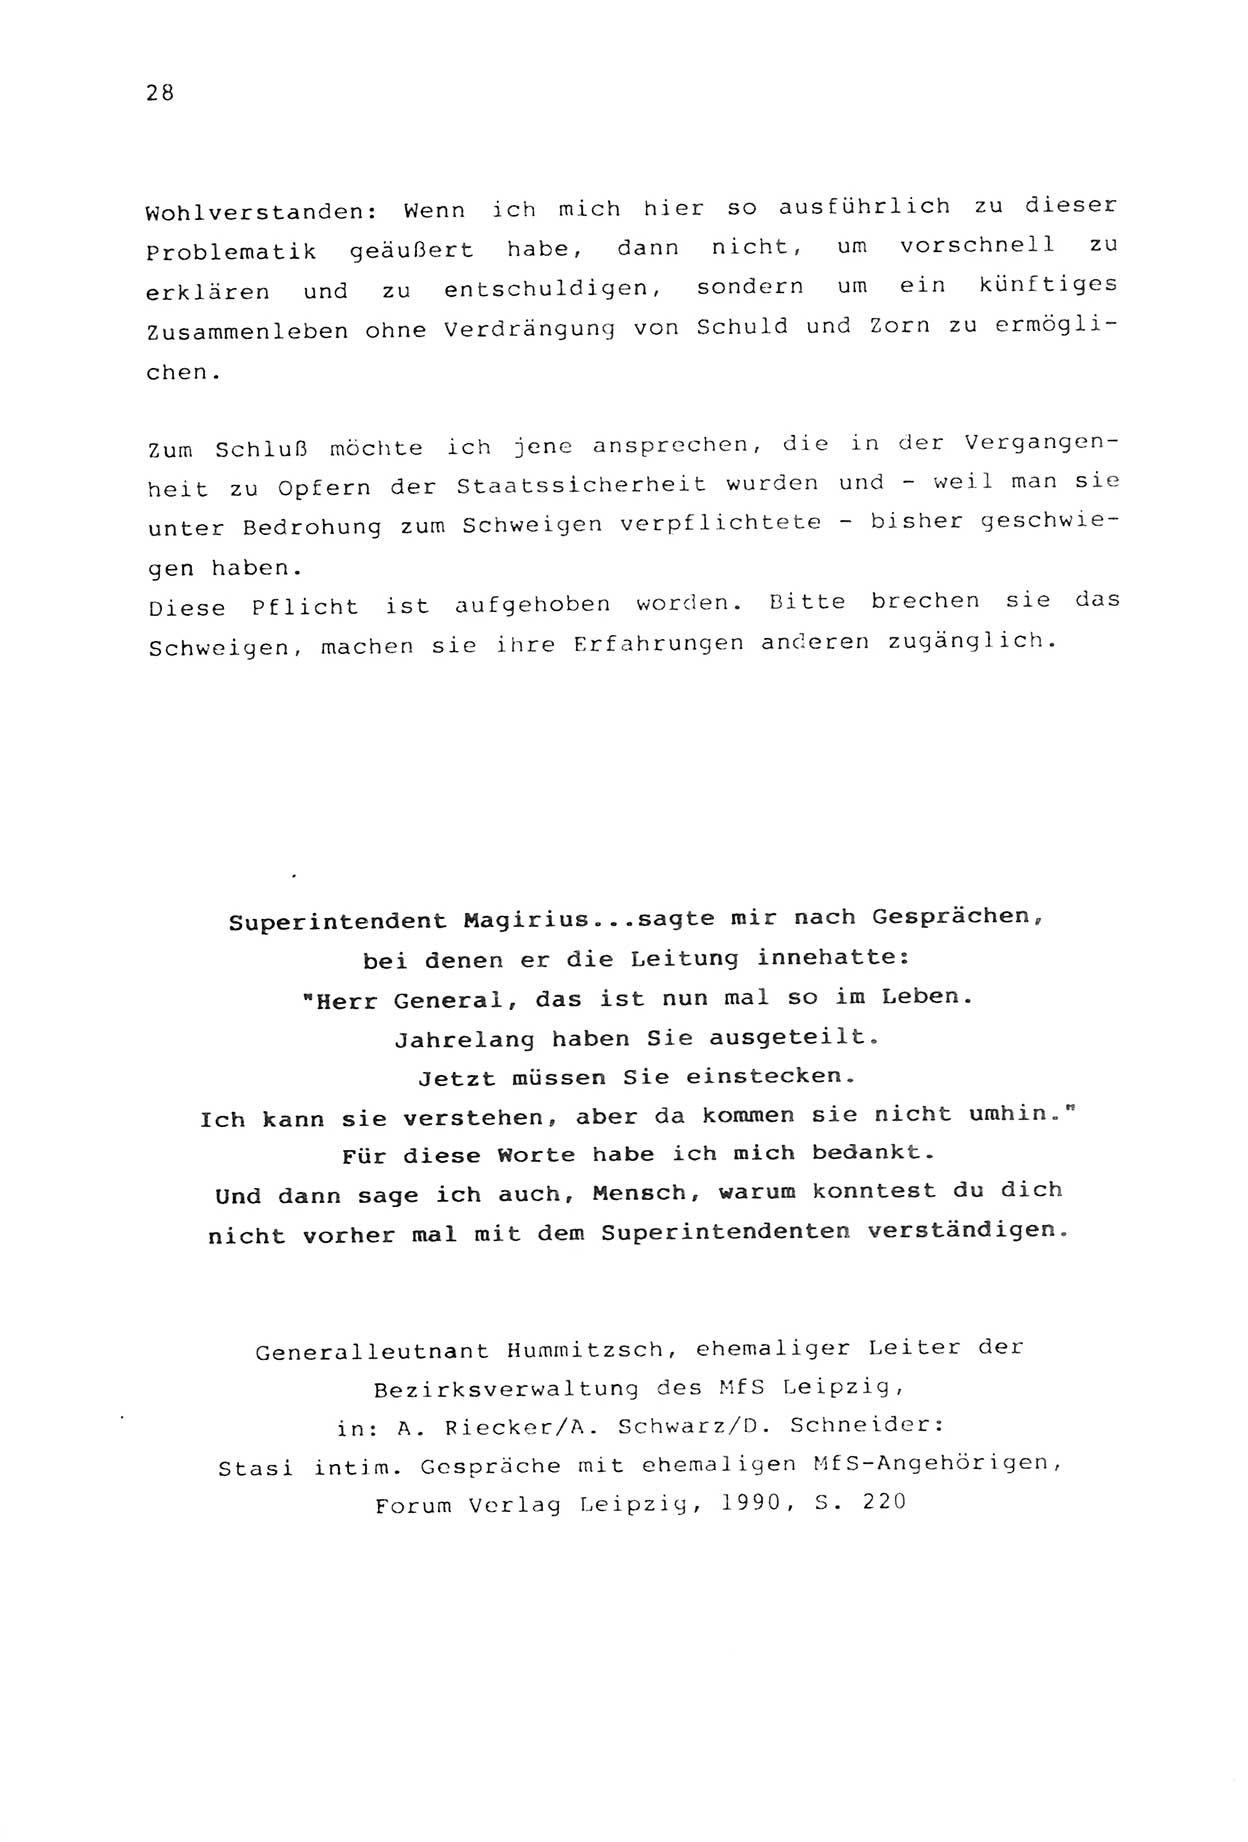 Zwie-Gespräch, Beiträge zur Aufarbeitung der Stasi-Vergangenheit [Deutsche Demokratische Republik (DDR)], Ausgabe Nr. 2, Berlin 1991, Seite 28 (Zwie-Gespr. Ausg. 2 1991, S. 28)